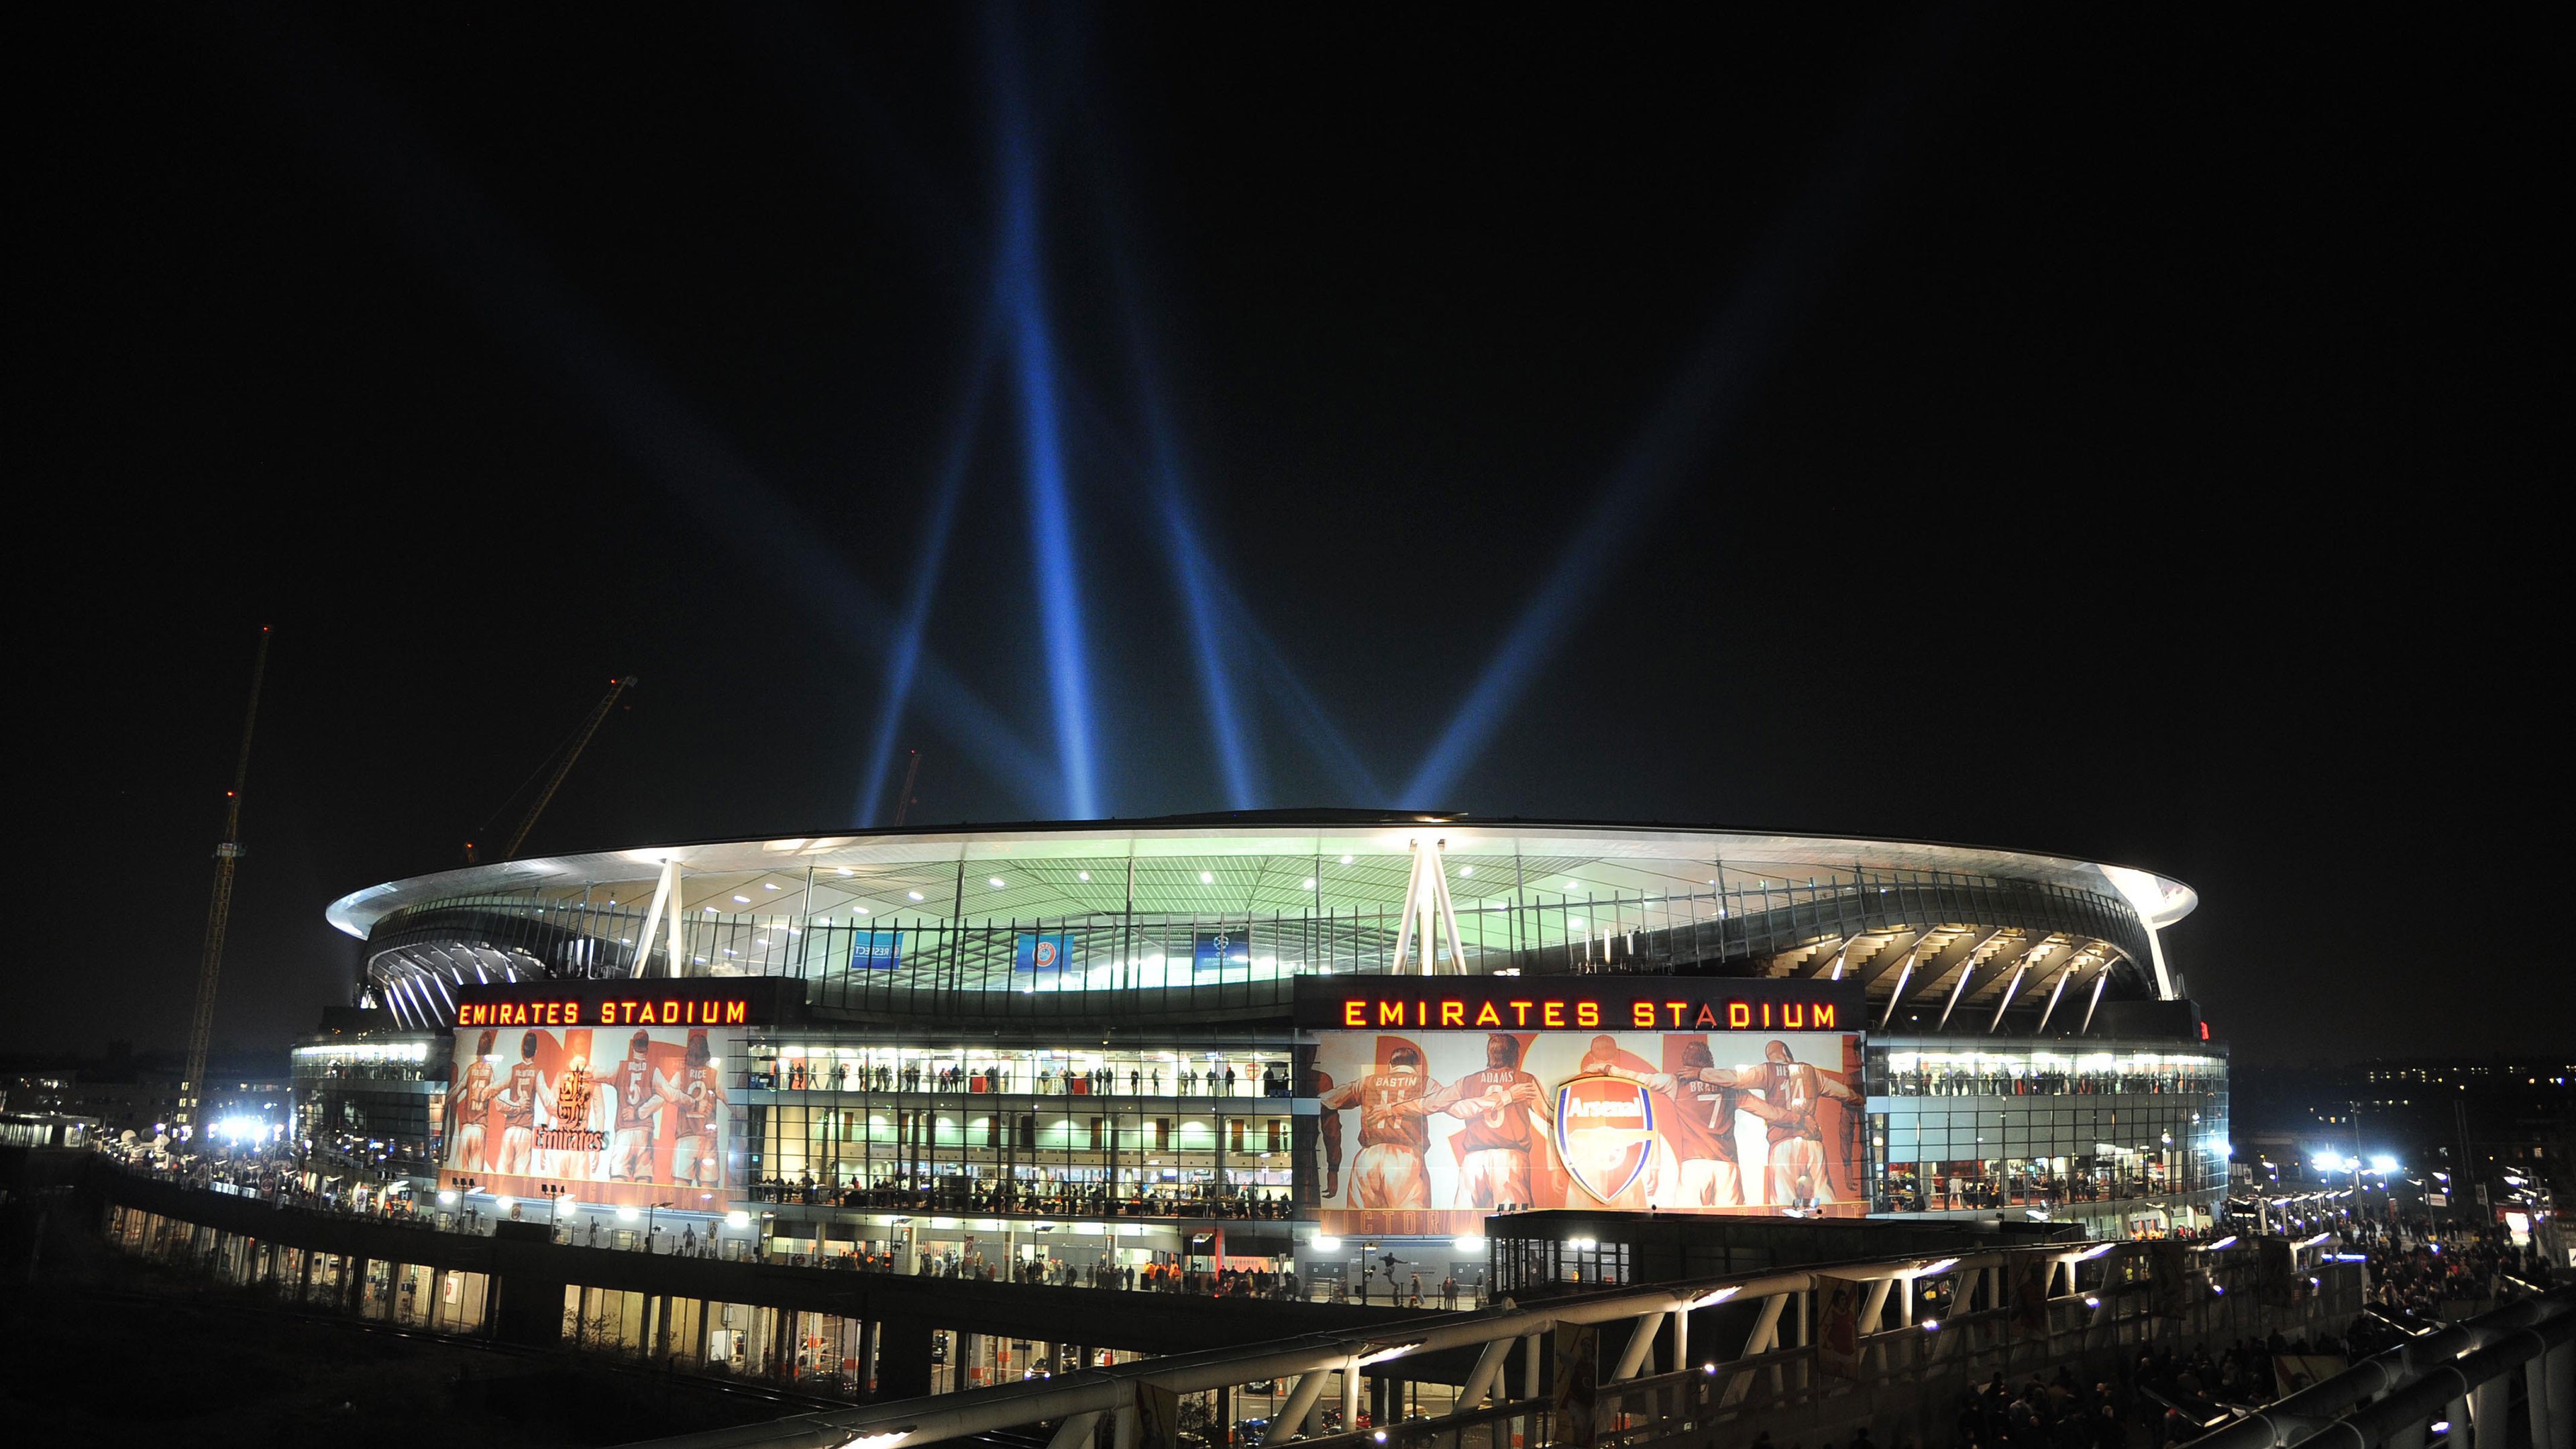 fond d'écran emirates hd,stade,stade spécifique au football,lumière,nuit,architecture